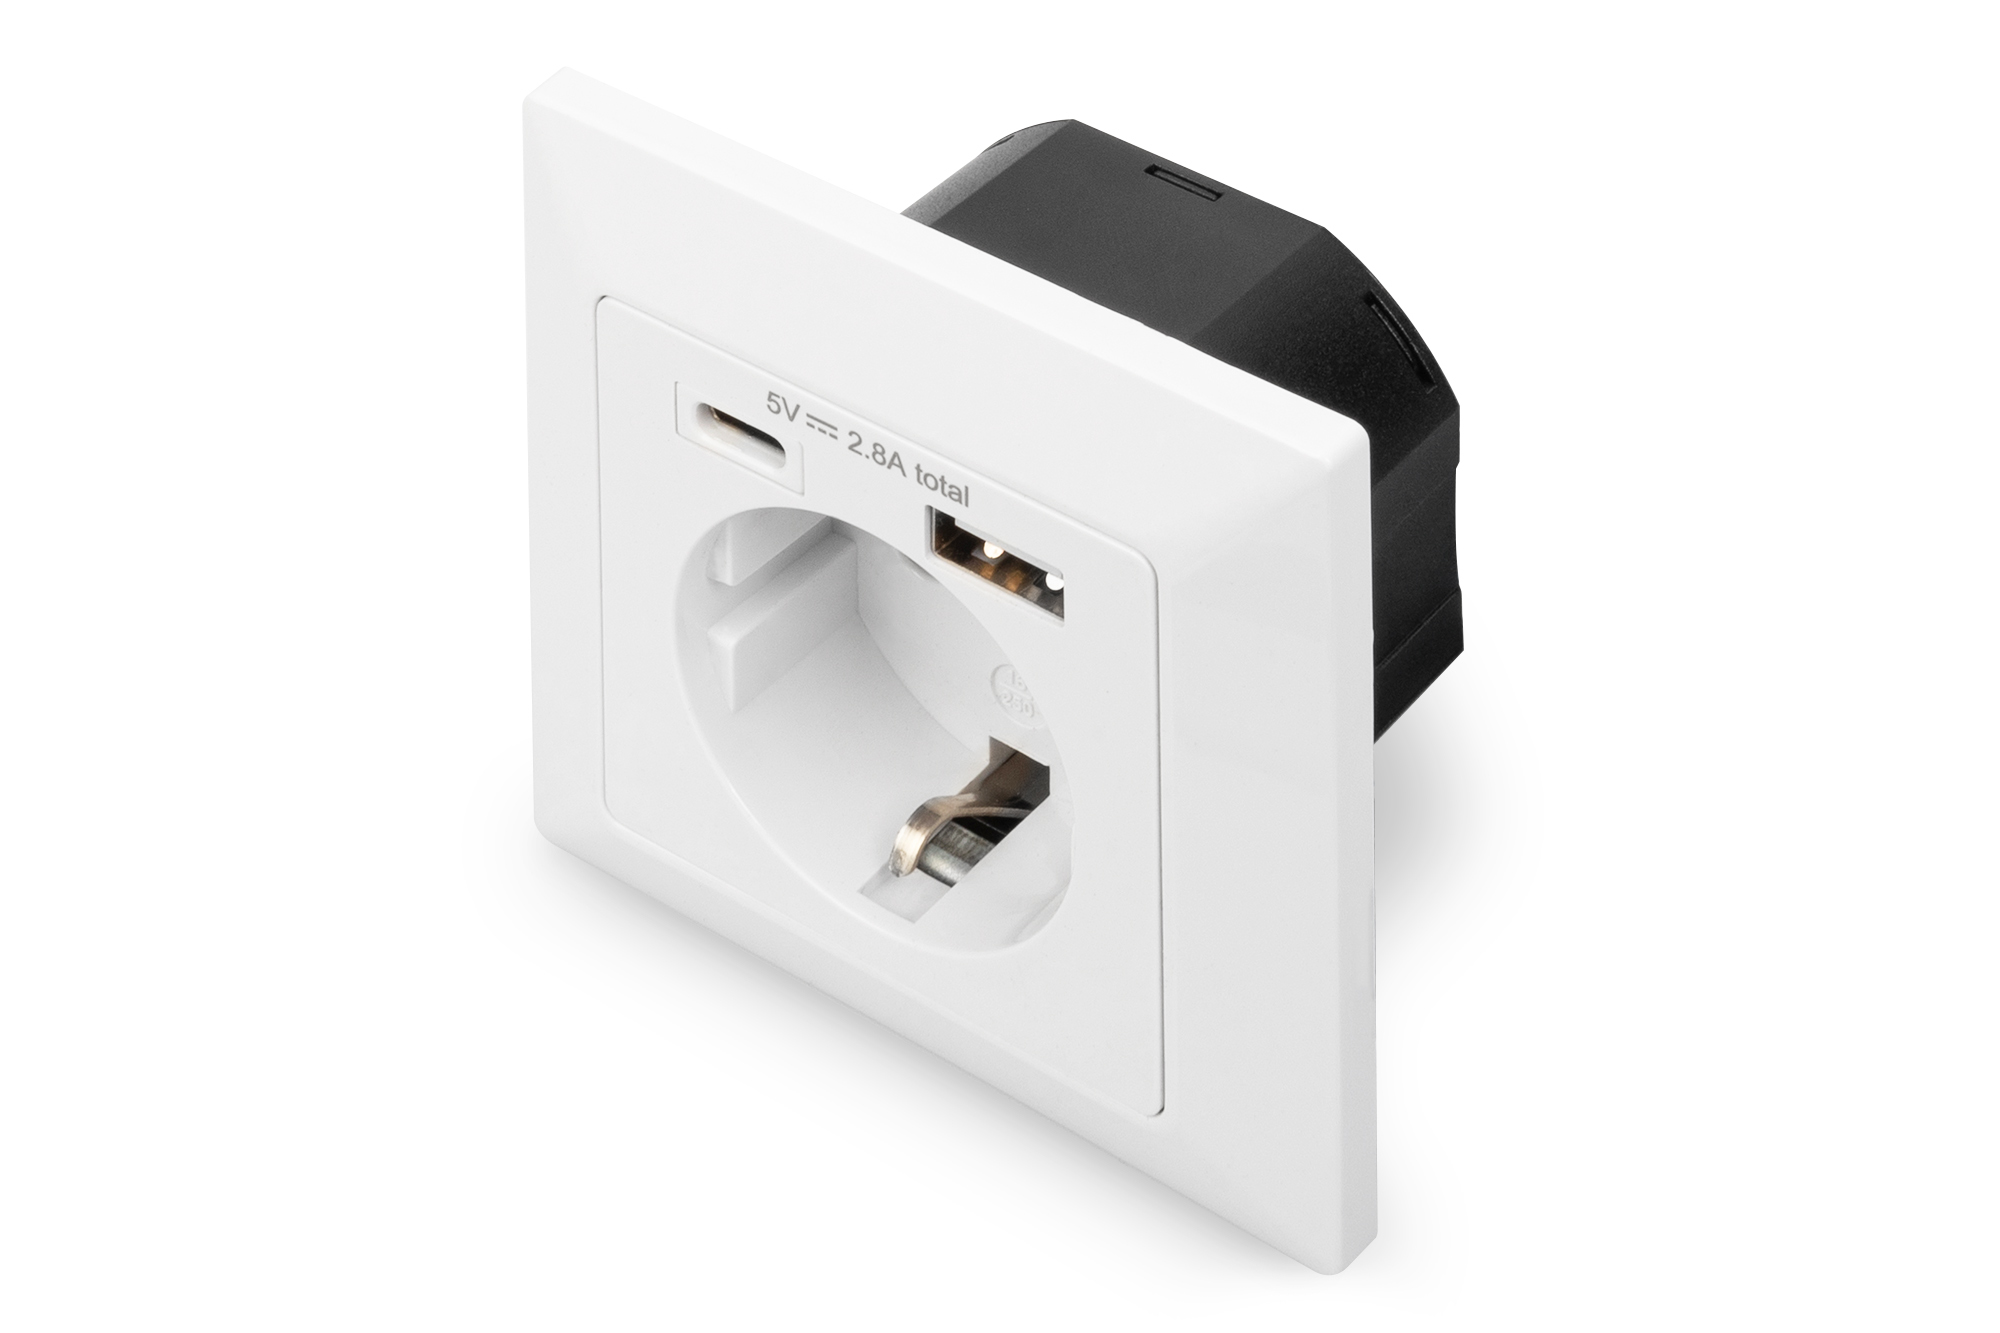 Tienda DIGITUS B2B  Enchufe de seguridad para el montaje empotrado con 1  USB Type C™, 1 USB A